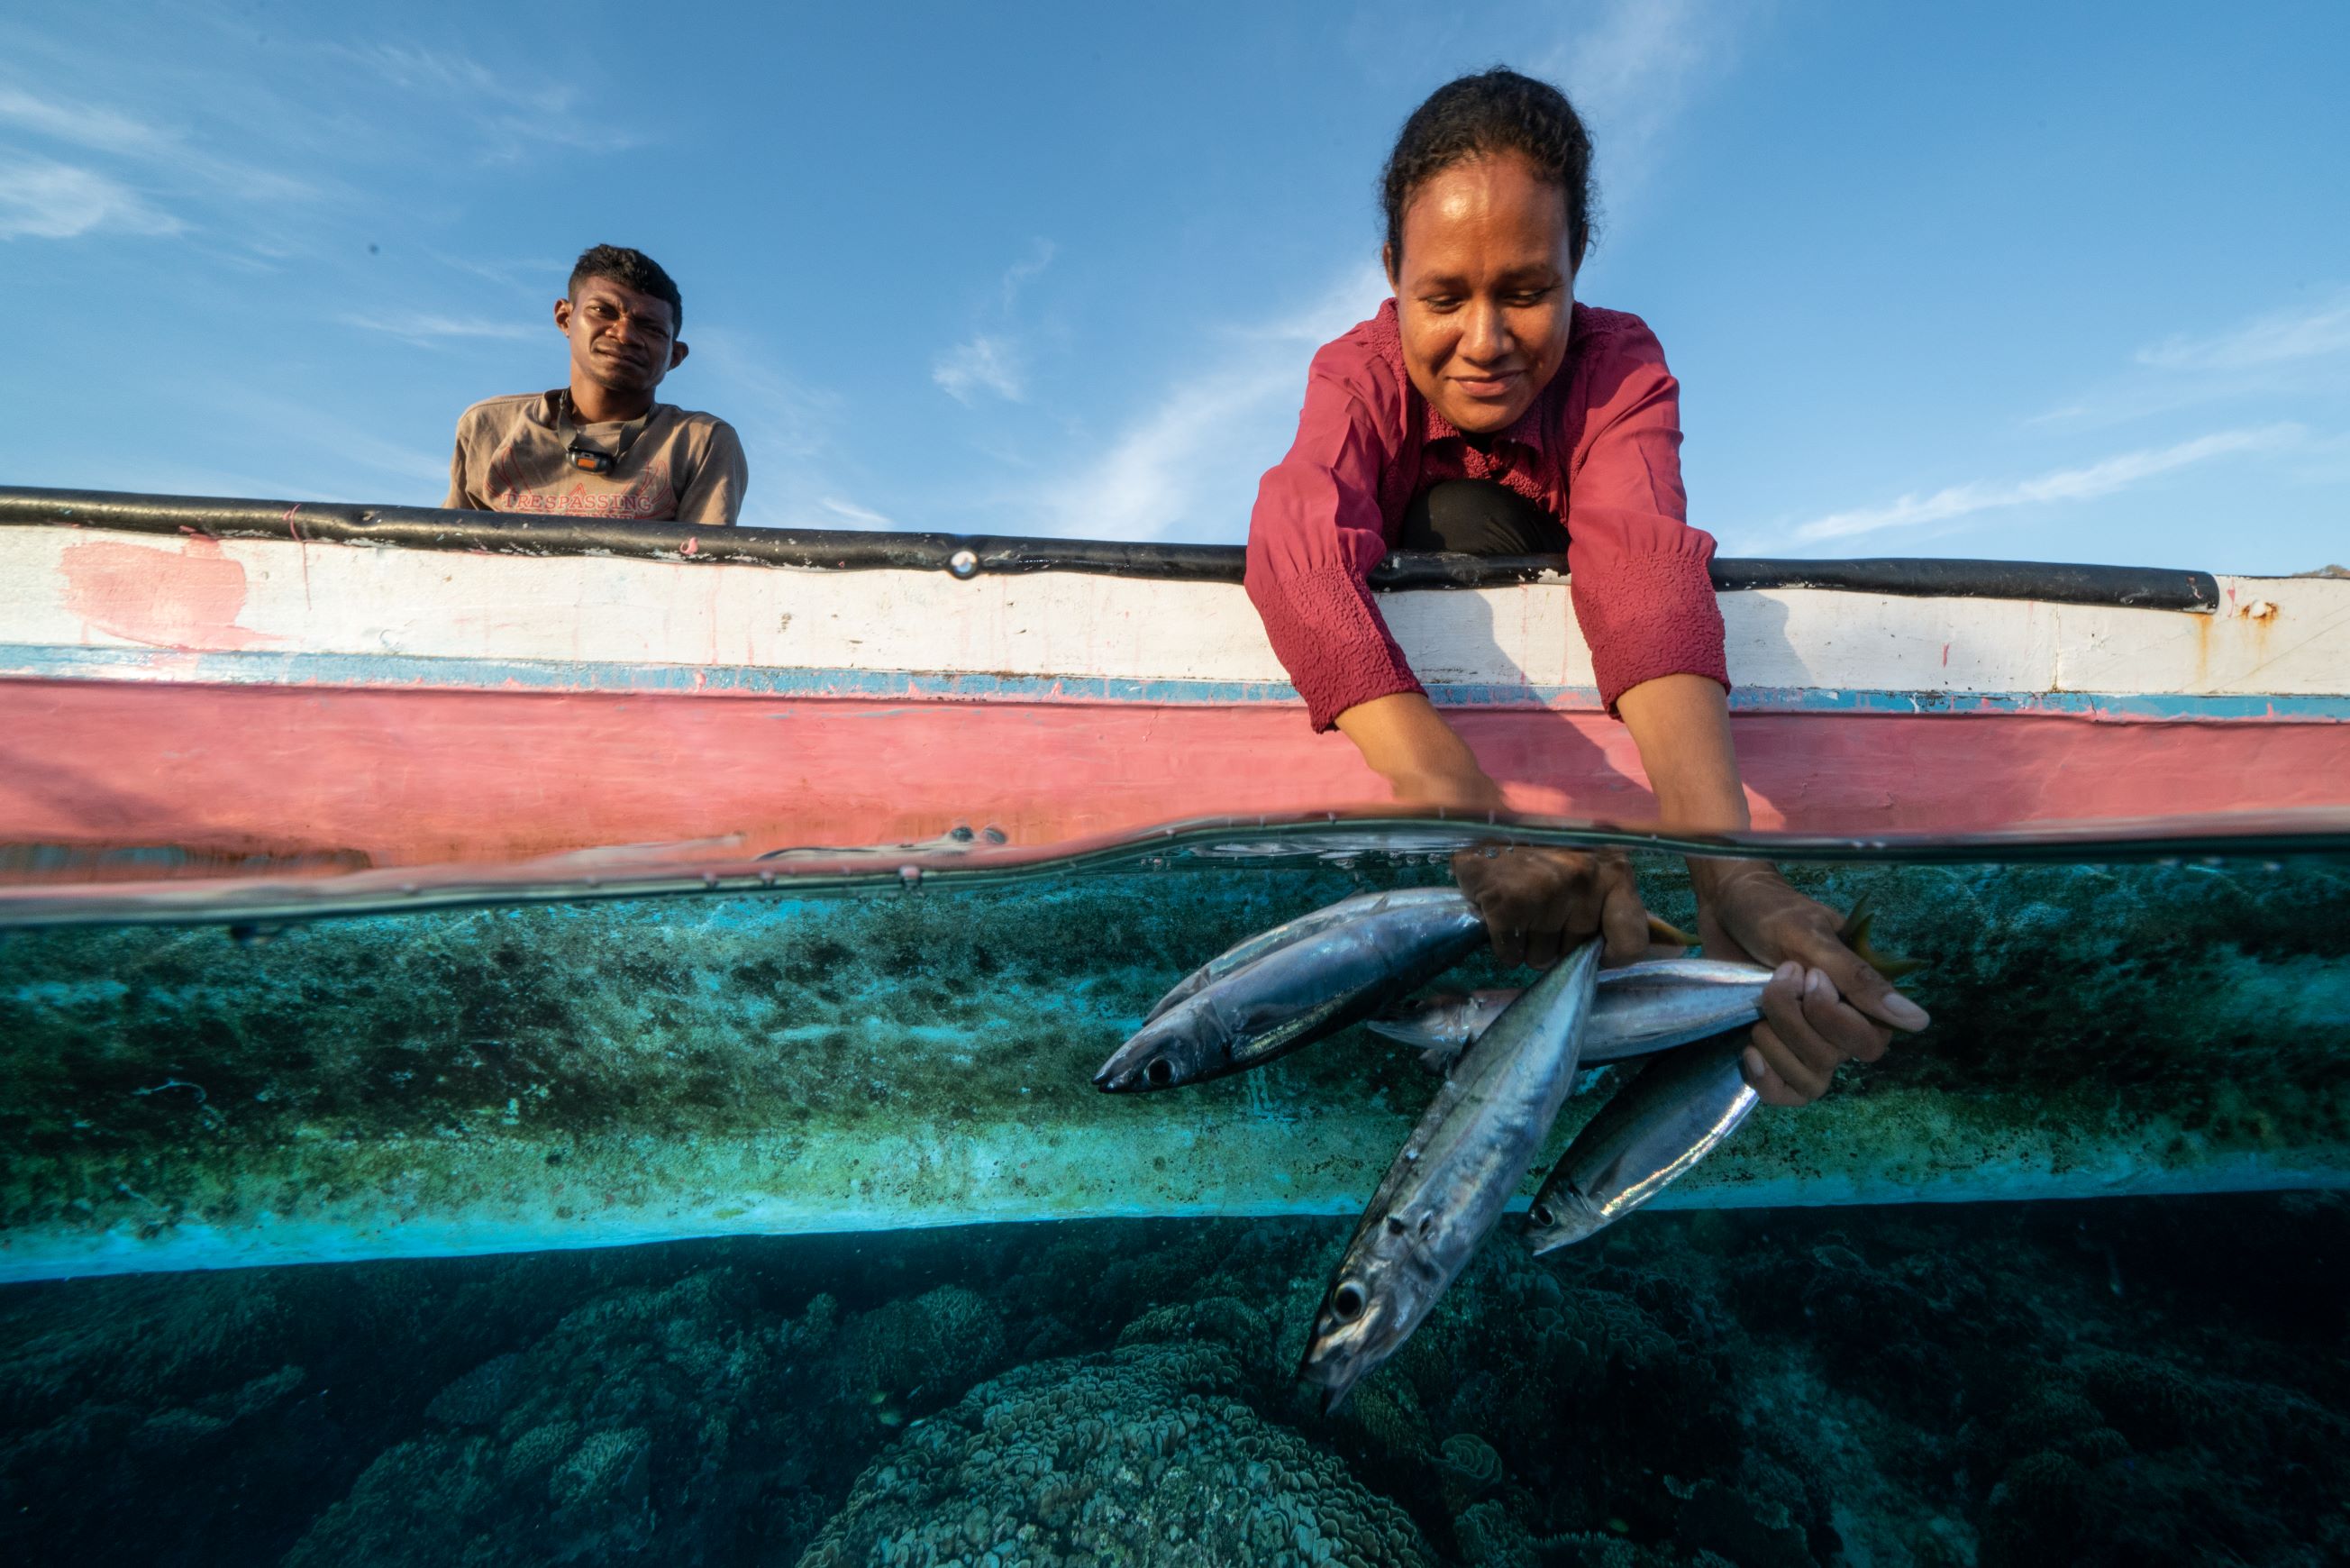 Sealegacy trip to Timor Leste